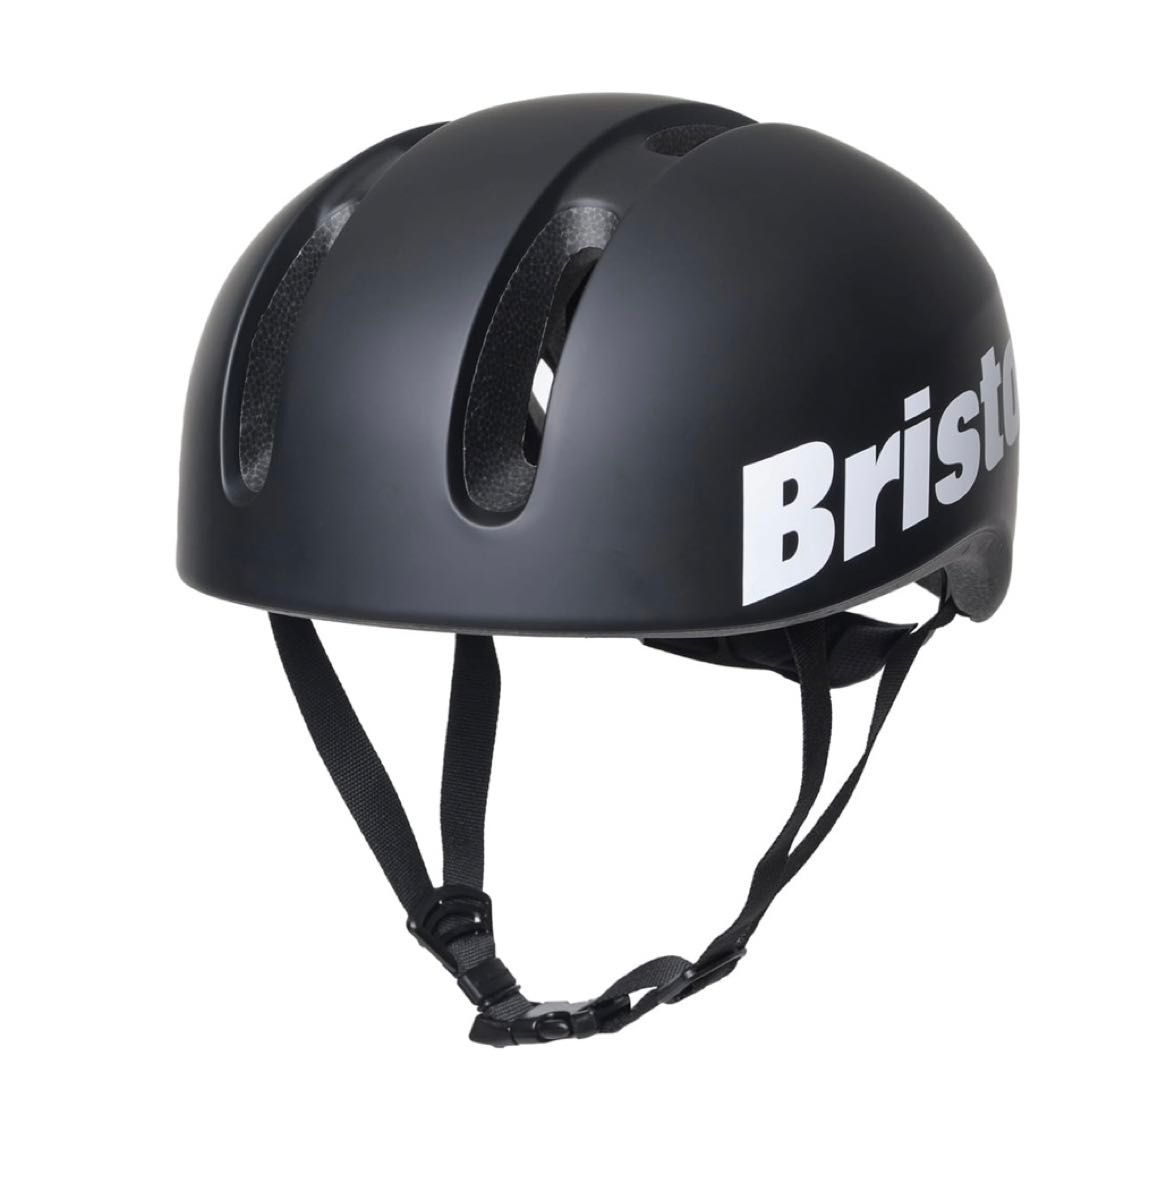 ラスト1点です FCRB Kabuto BICYCLE HELMET ヘルメット ブラック 新品未使用未開封 ブリストル バイク